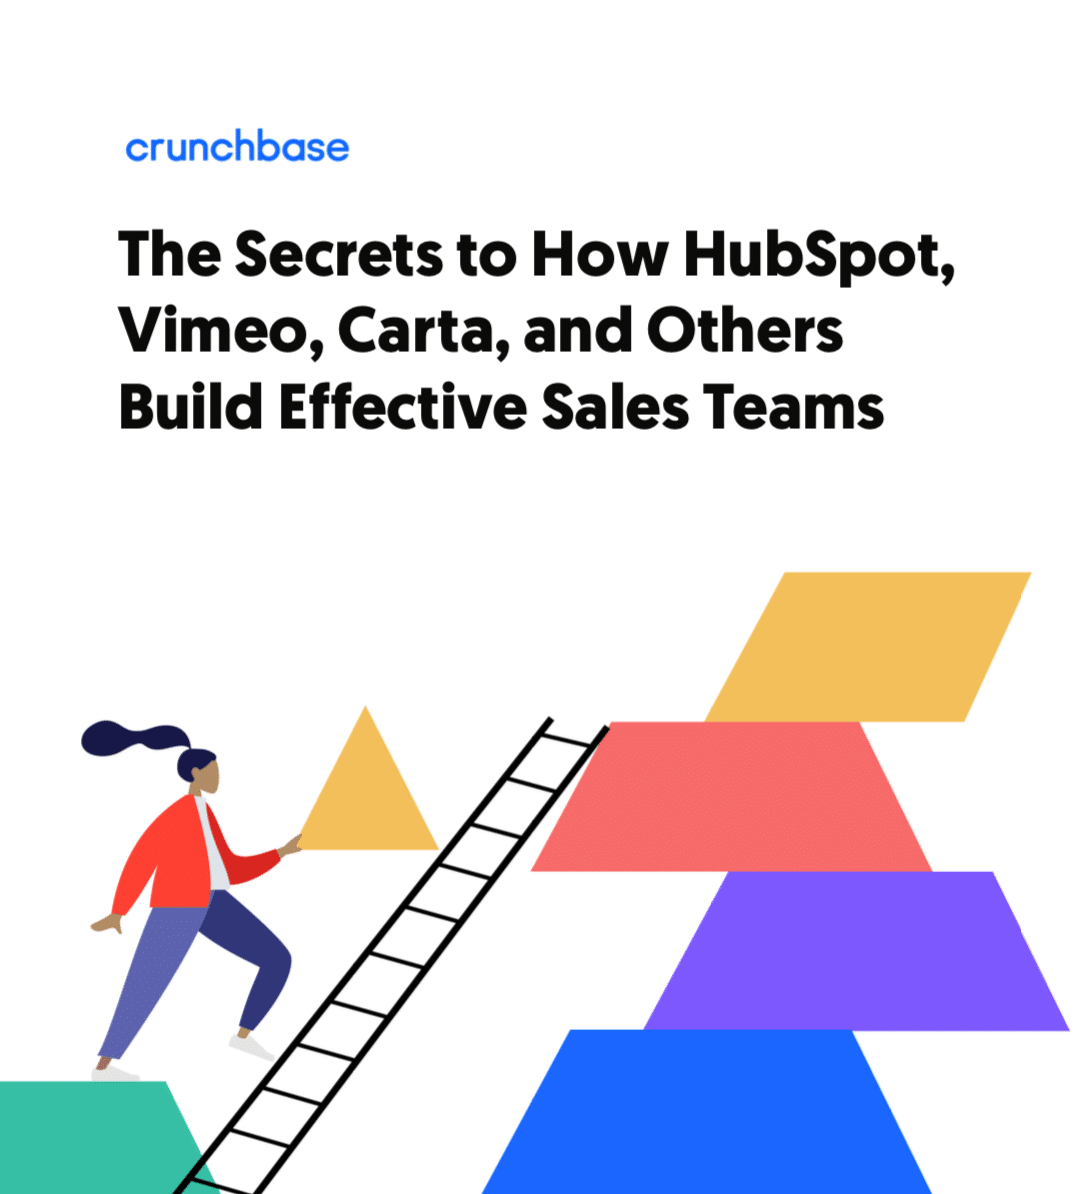 Build Effective Sales Teams